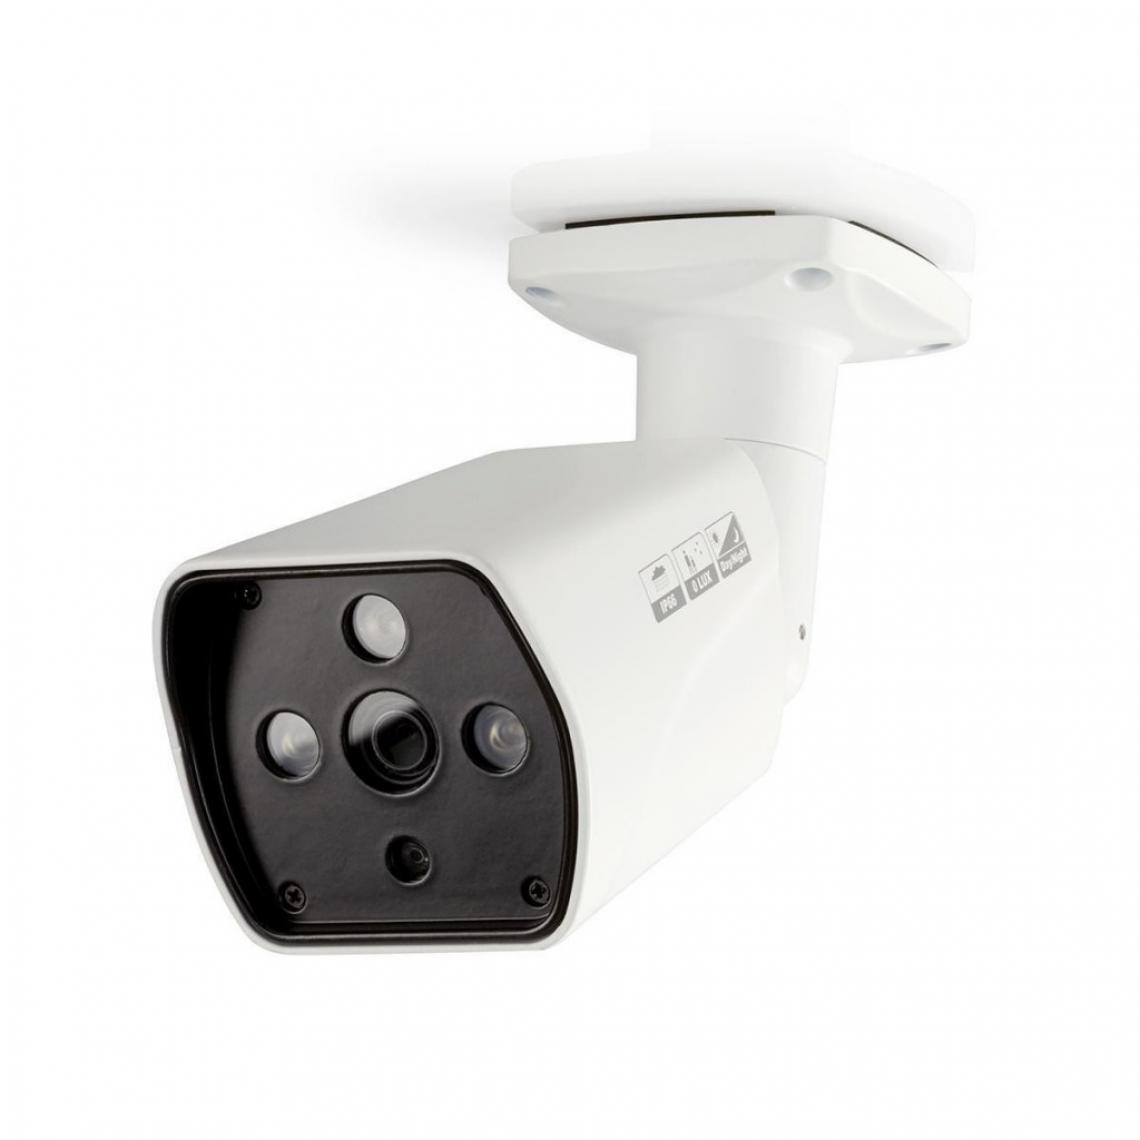 Alpexe - Caméra de Sécurité CCTV | Tube | Full HD | Pour une utilisation avec un DVR HD analogique - Caméra de surveillance connectée